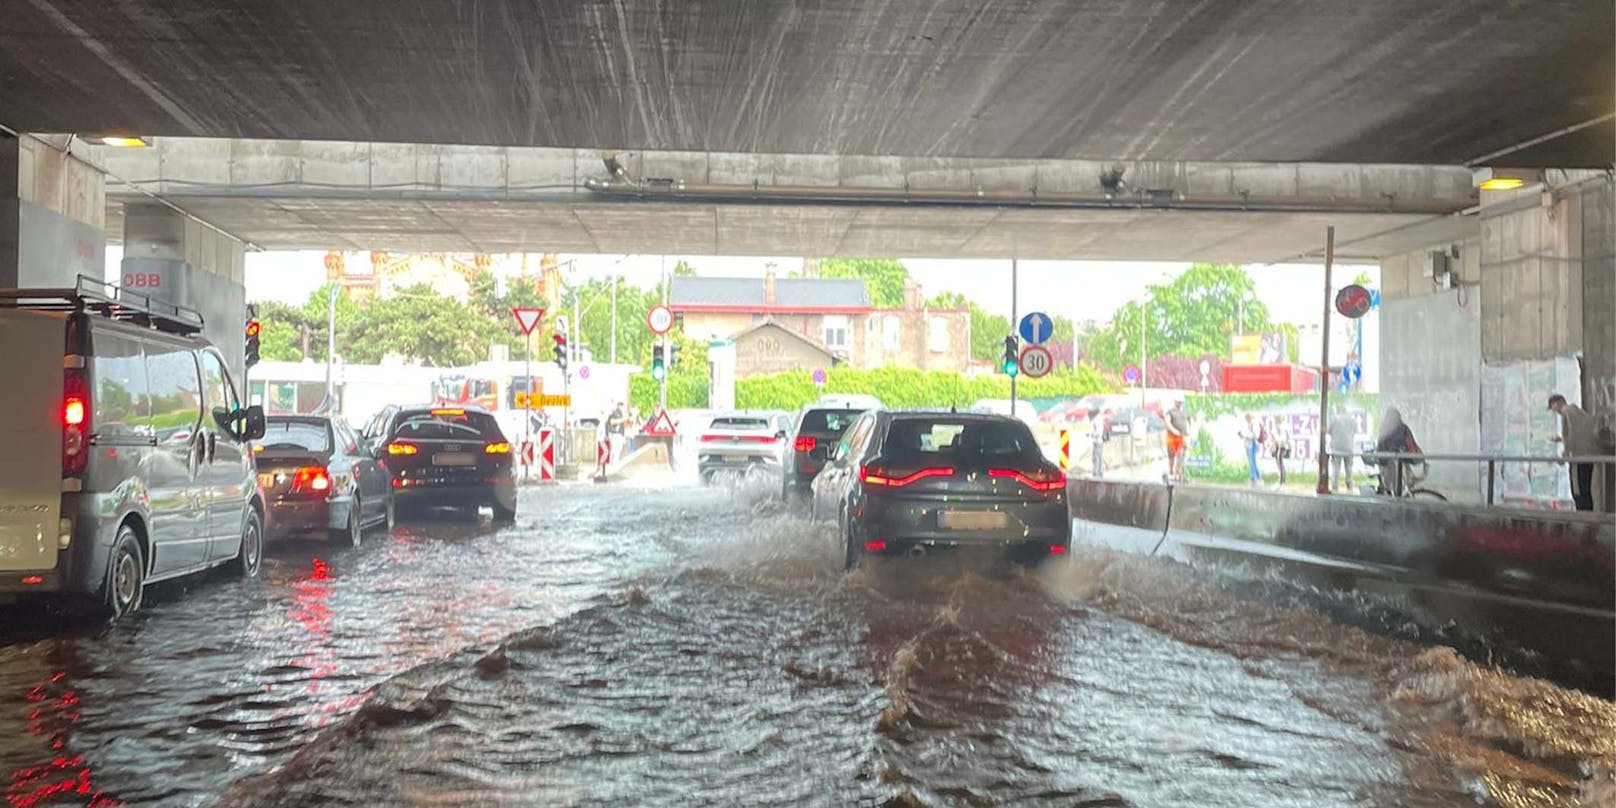 An der Haltestelle Matzleinsdorfer Platz hatten die Autofahrer mit dem Starkregen zu kämpfen.